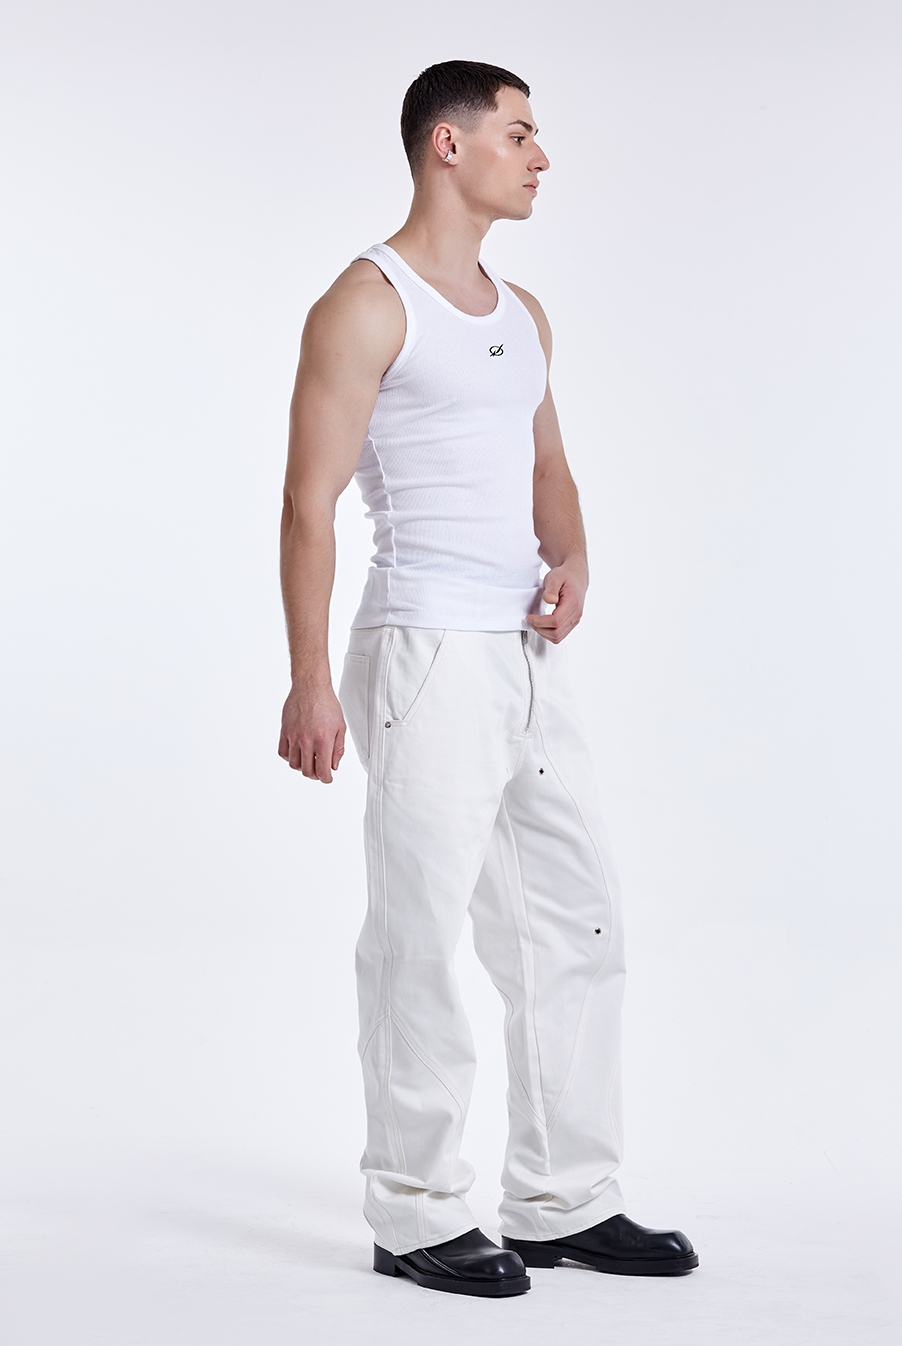 Basic curve sleeveless - White